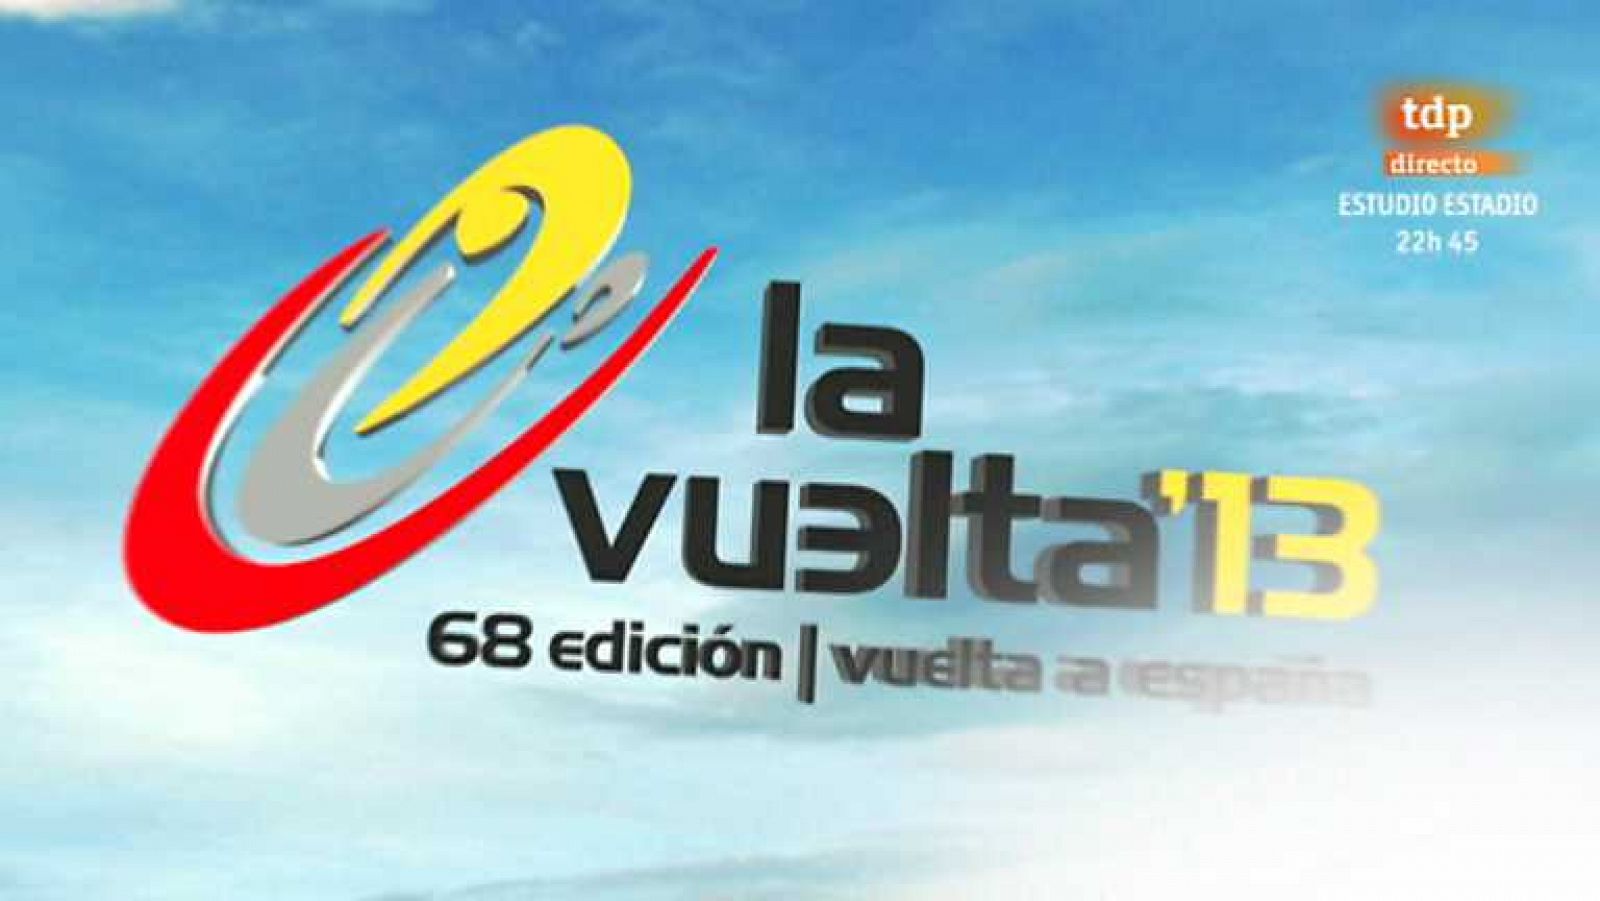 Ciclismo - Presentación de la Vuelta ciclista a España 2013 - ver ahora